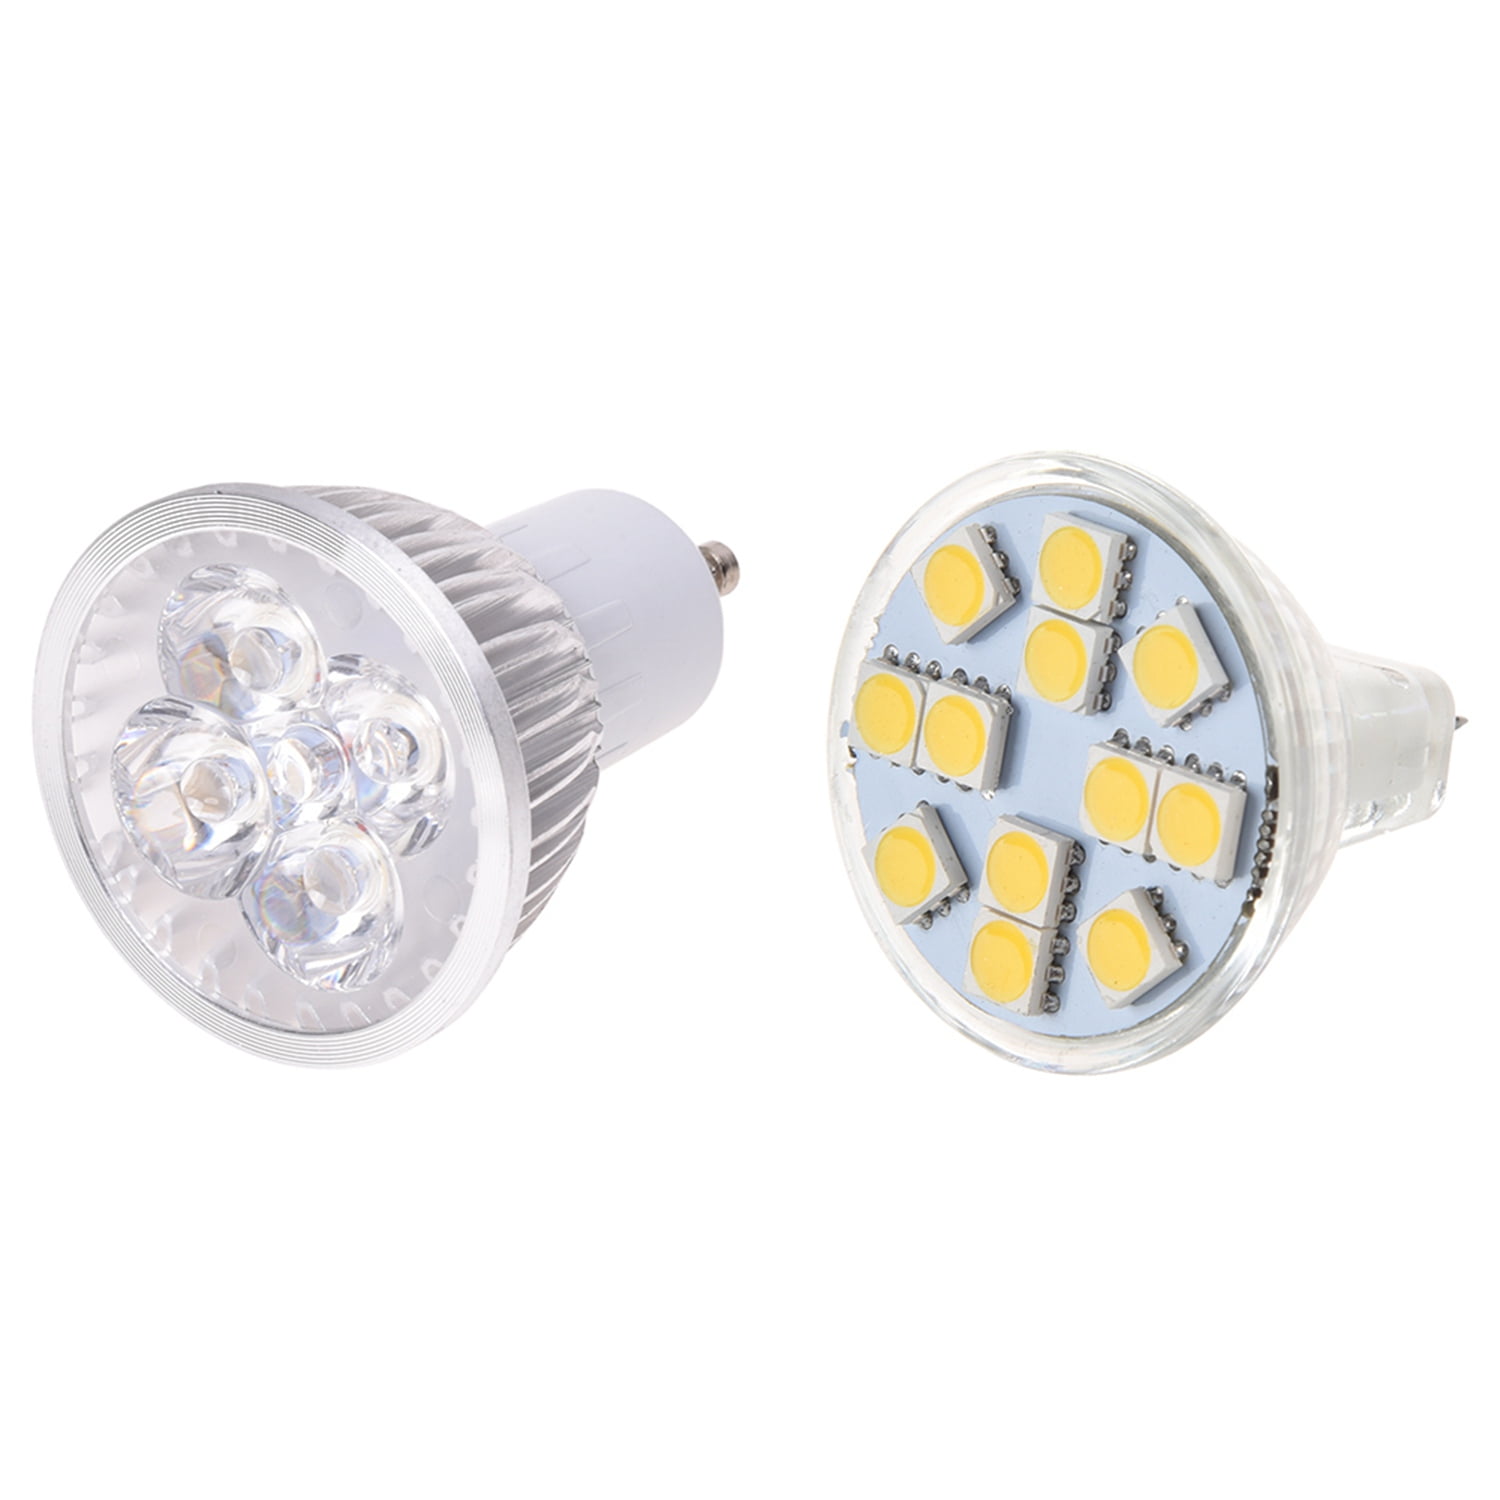 2 Pcs G4 Led Spot Light Bulb Warm White New Projector Lamp Led Lamp Spotlight- 3000K-3500K & 3500K -